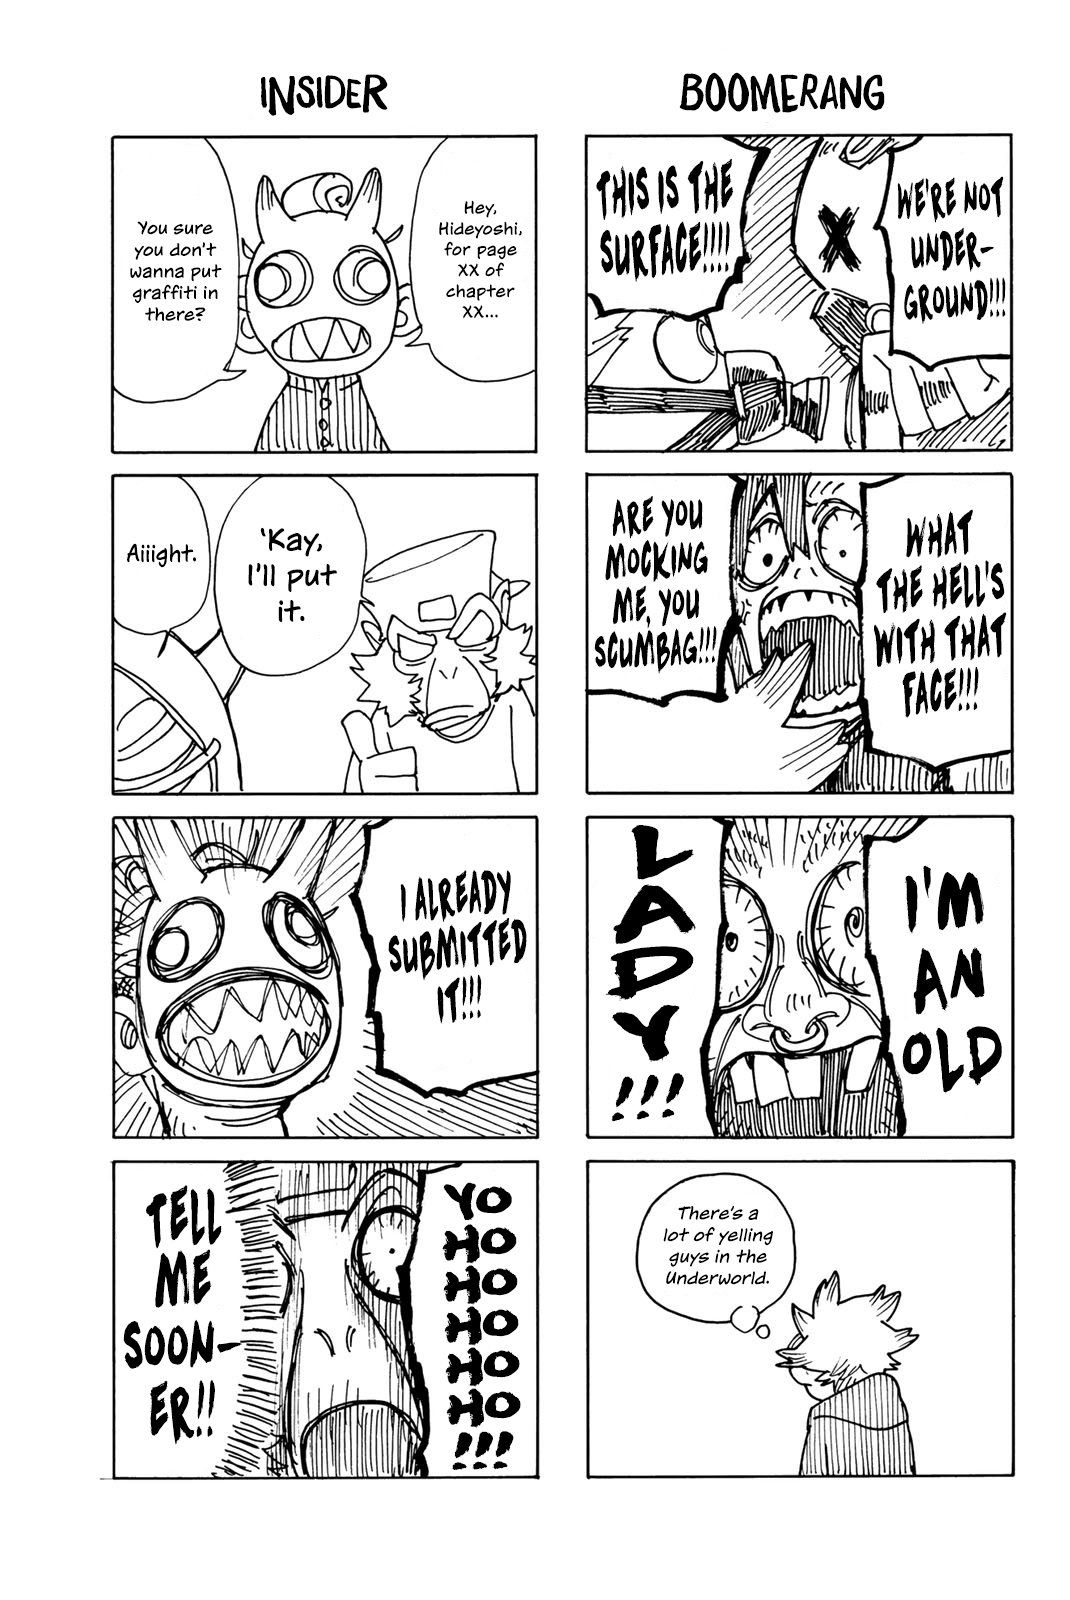 Gachiakuta - Page 2